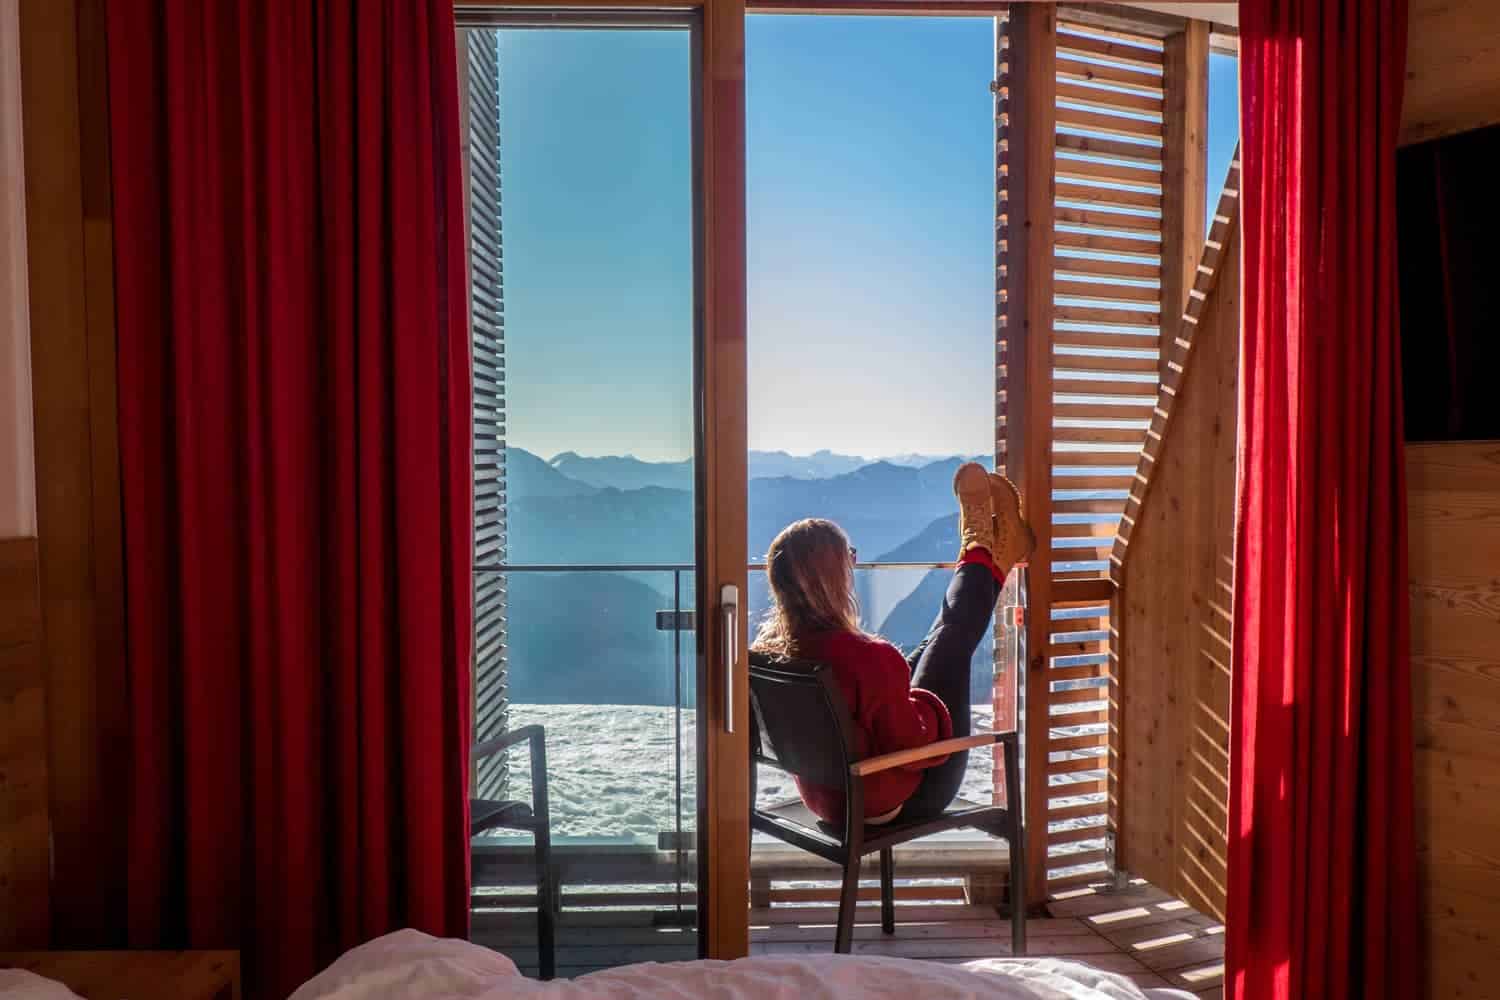 Rooms with a view at Alpinhotel Pacheiner on the Gerlitzen Alpe, Austria